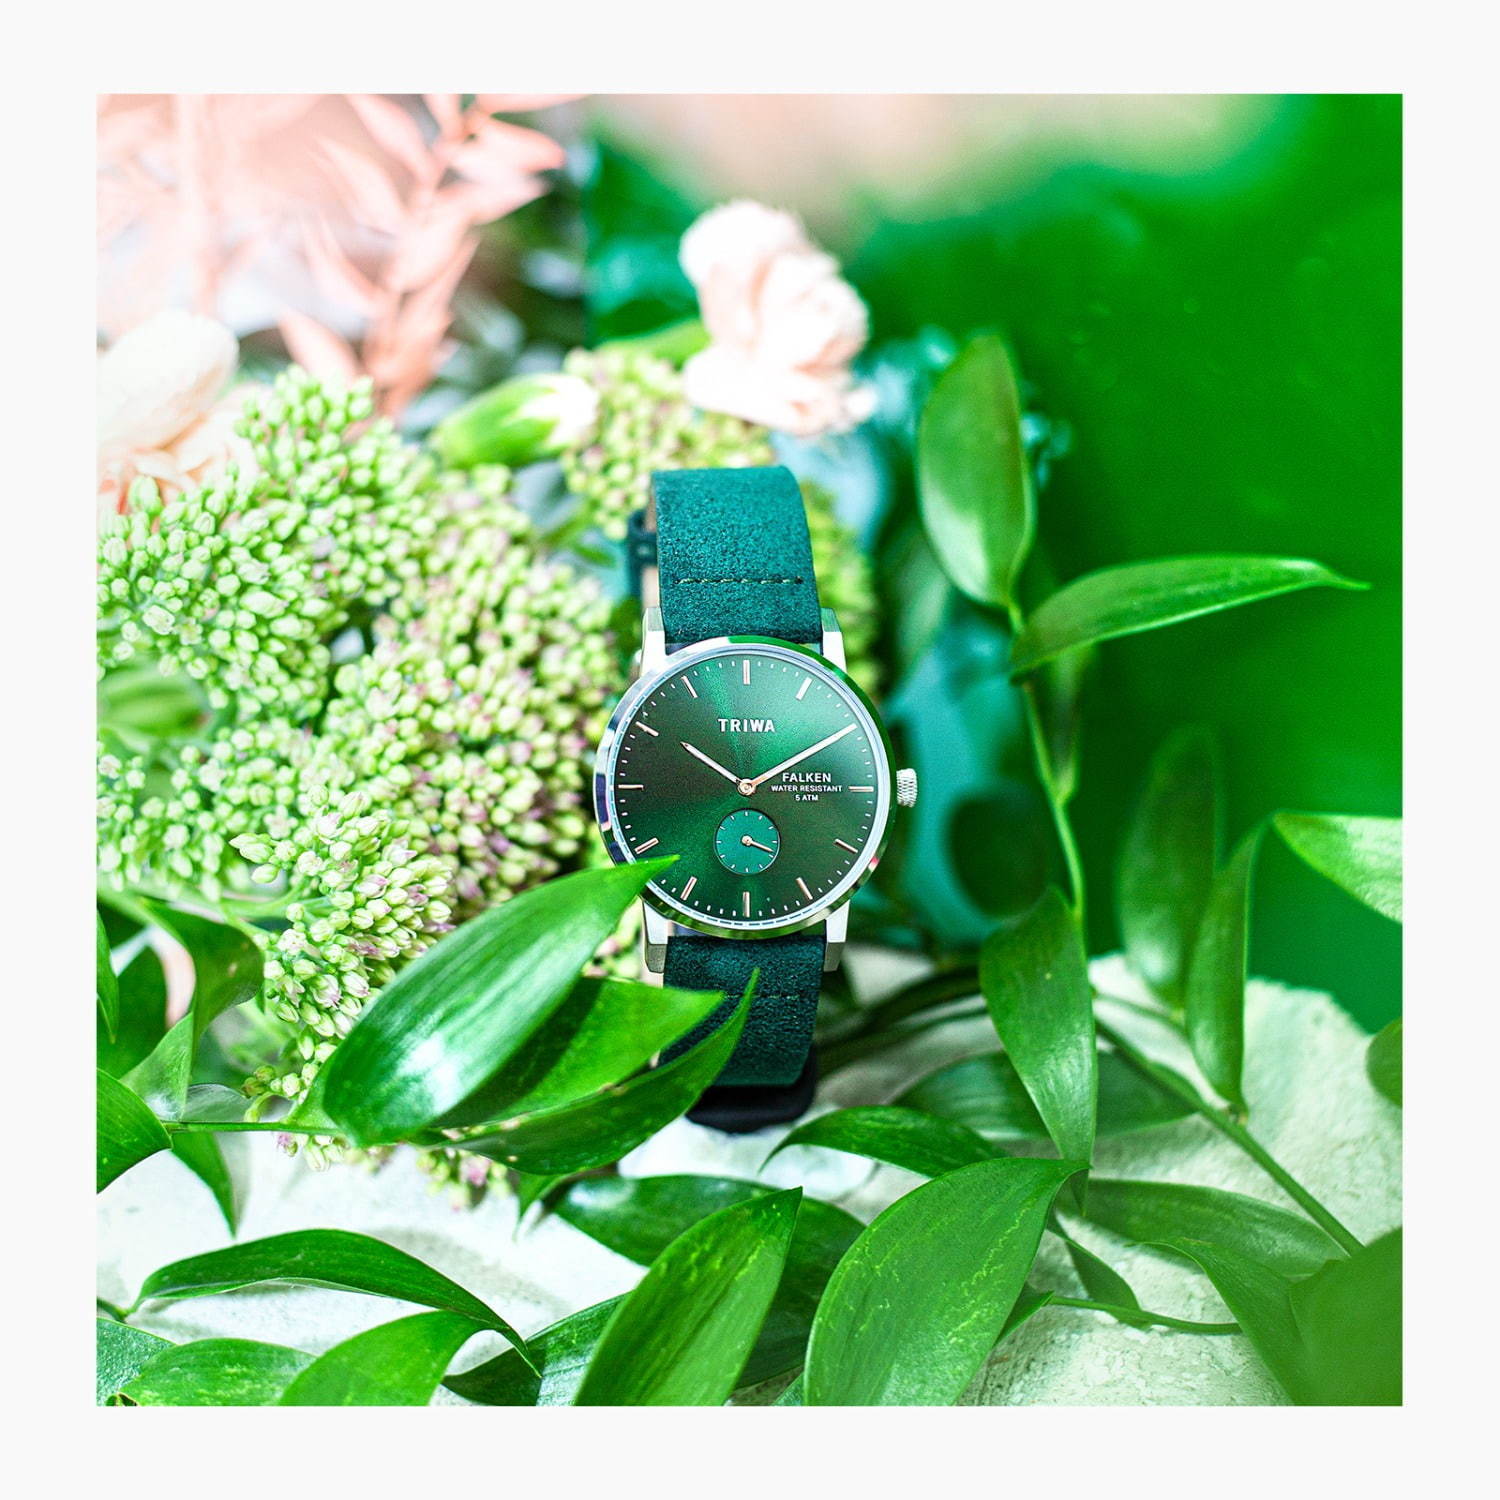 トリワ“エメラルド”カラーの新作腕時計、アルカンターラのヴィーガン